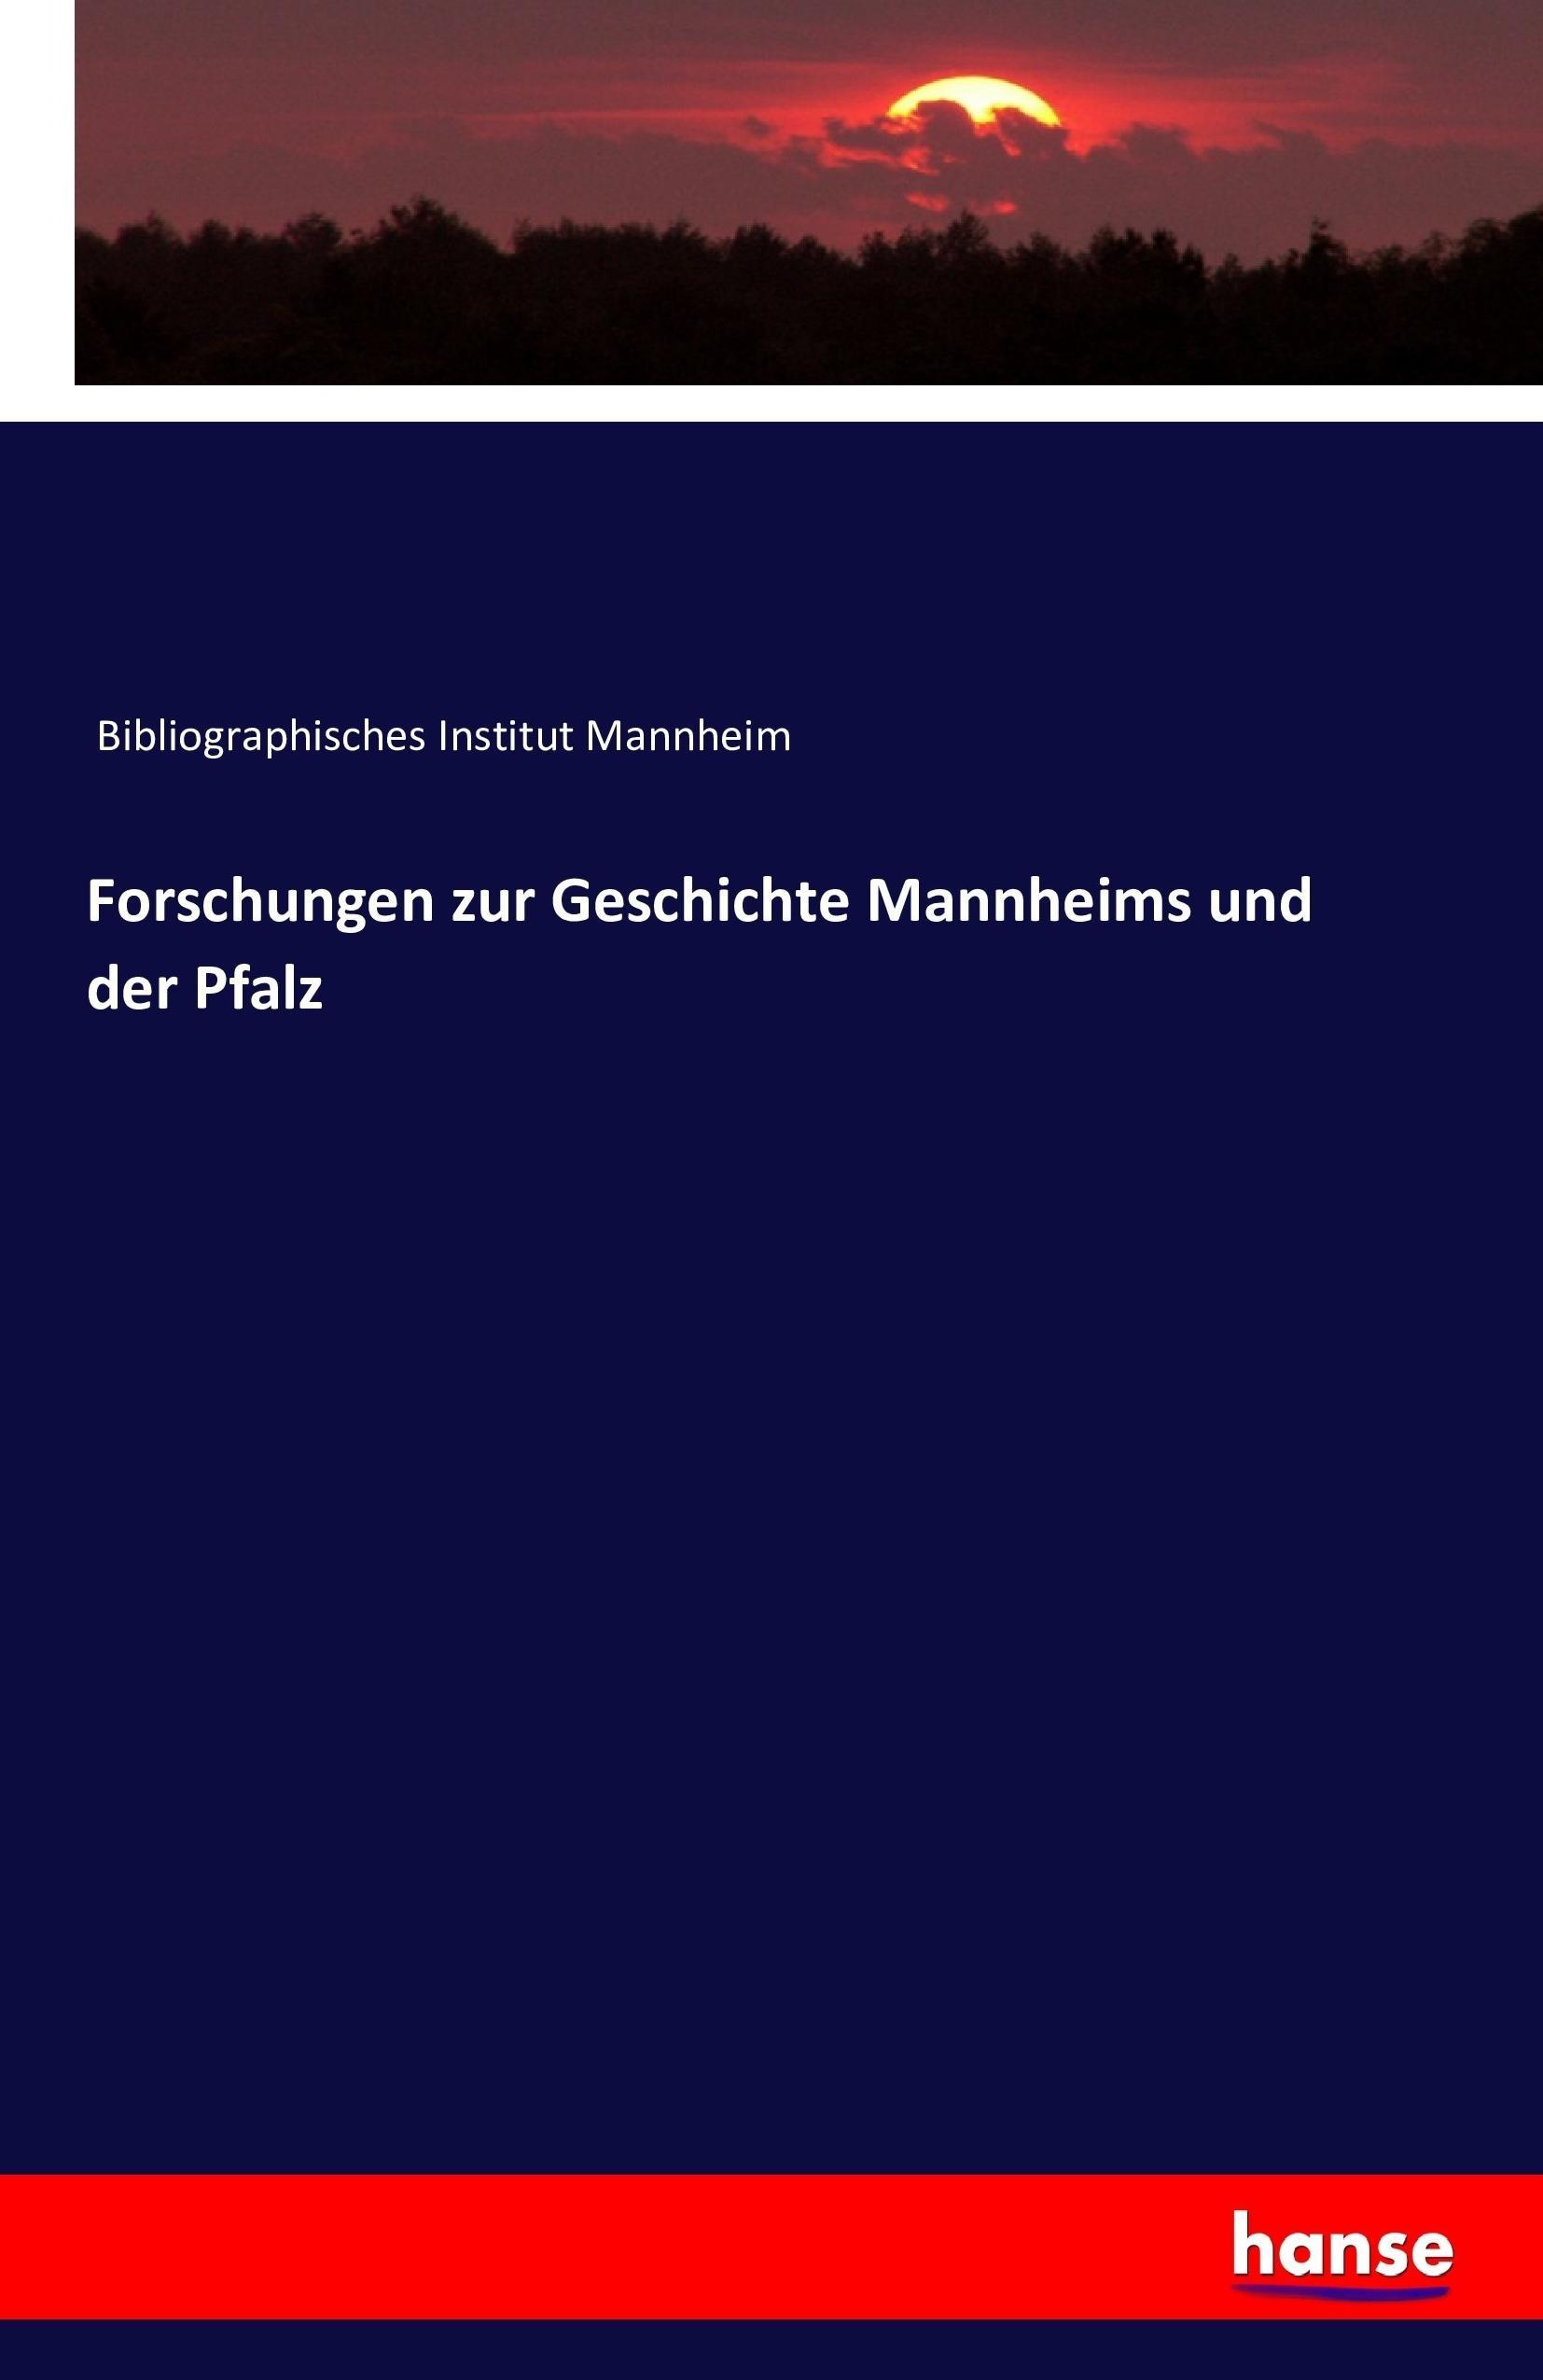 Forschungen zur Geschichte Mannheims und der Pfalz - Bibliographisches Institut Mannheim